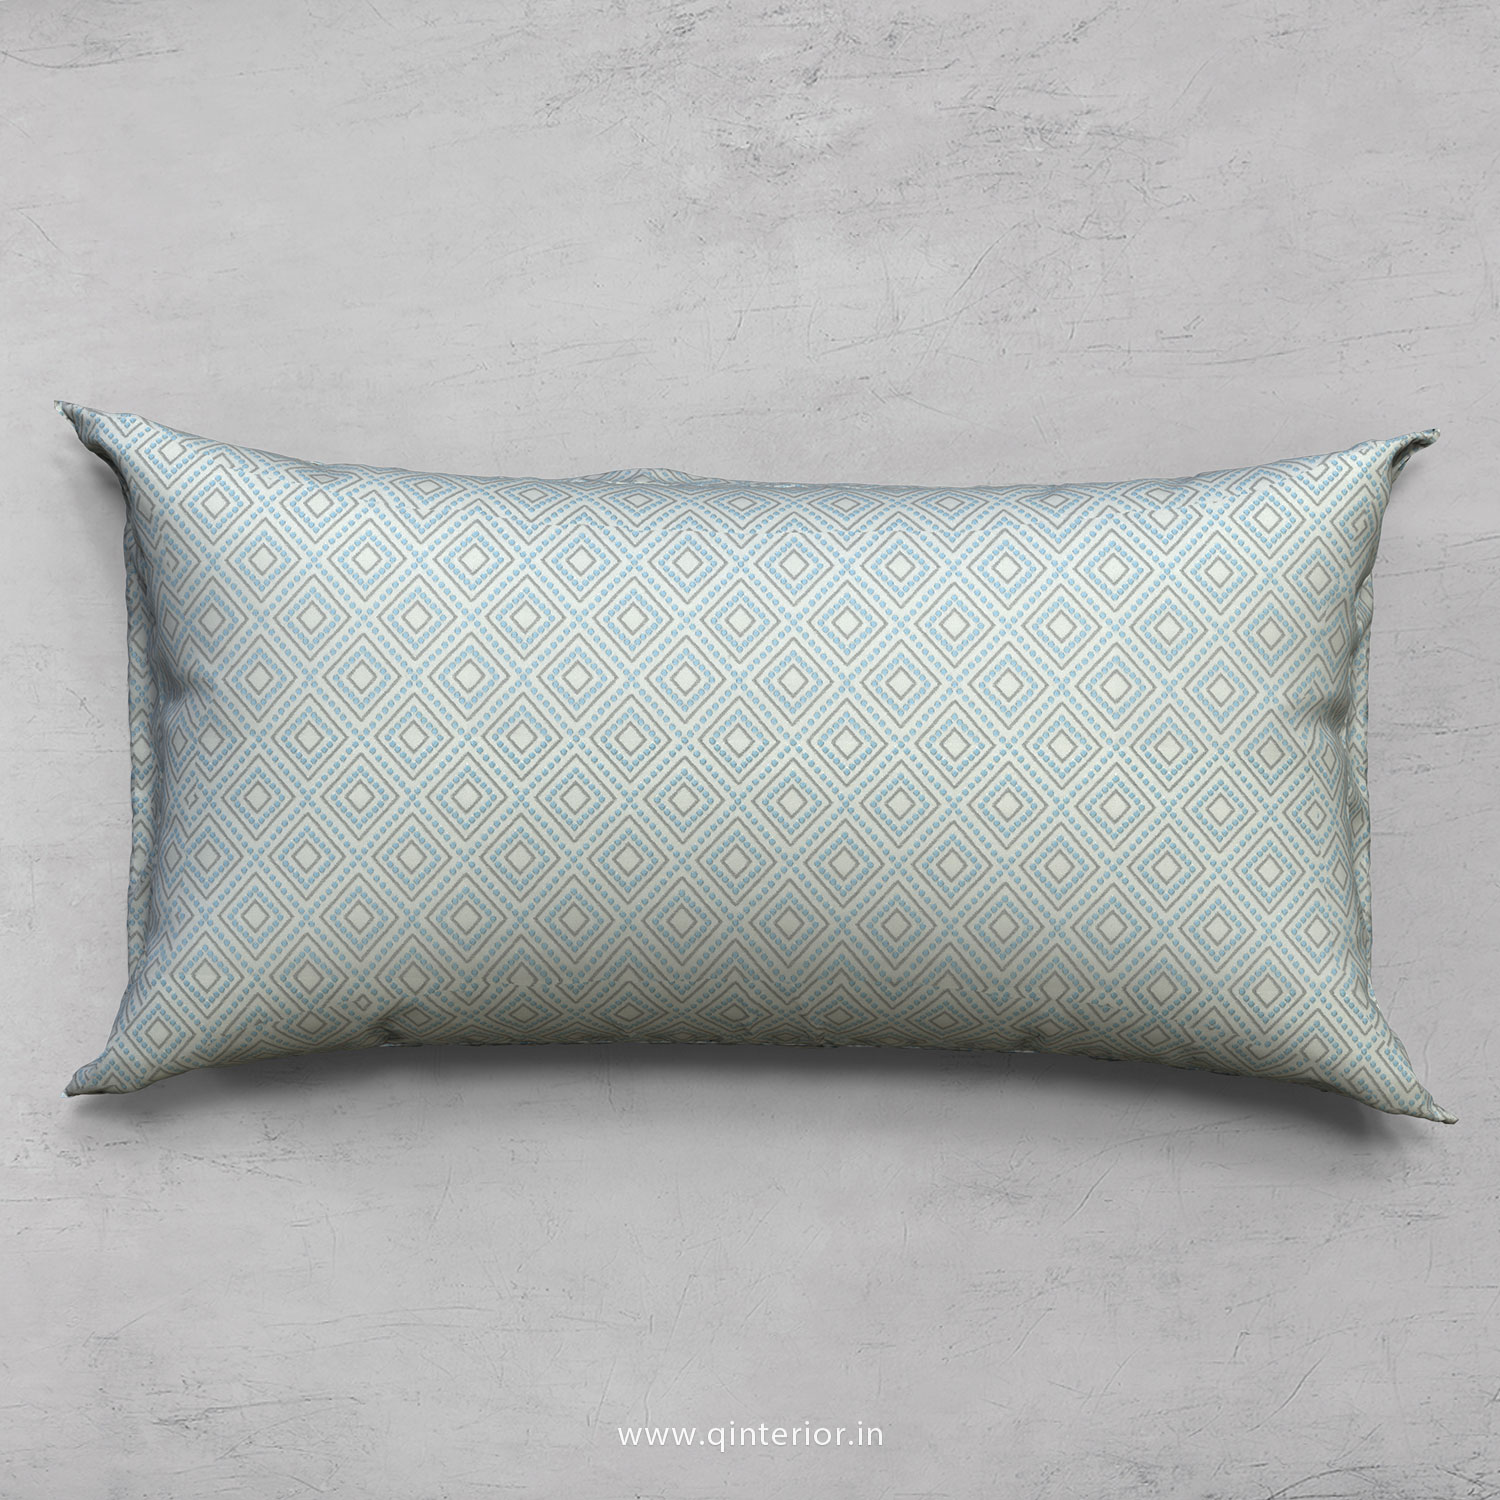 Cushion With Cushion Cover in Jacquard- CUS002 JQ27